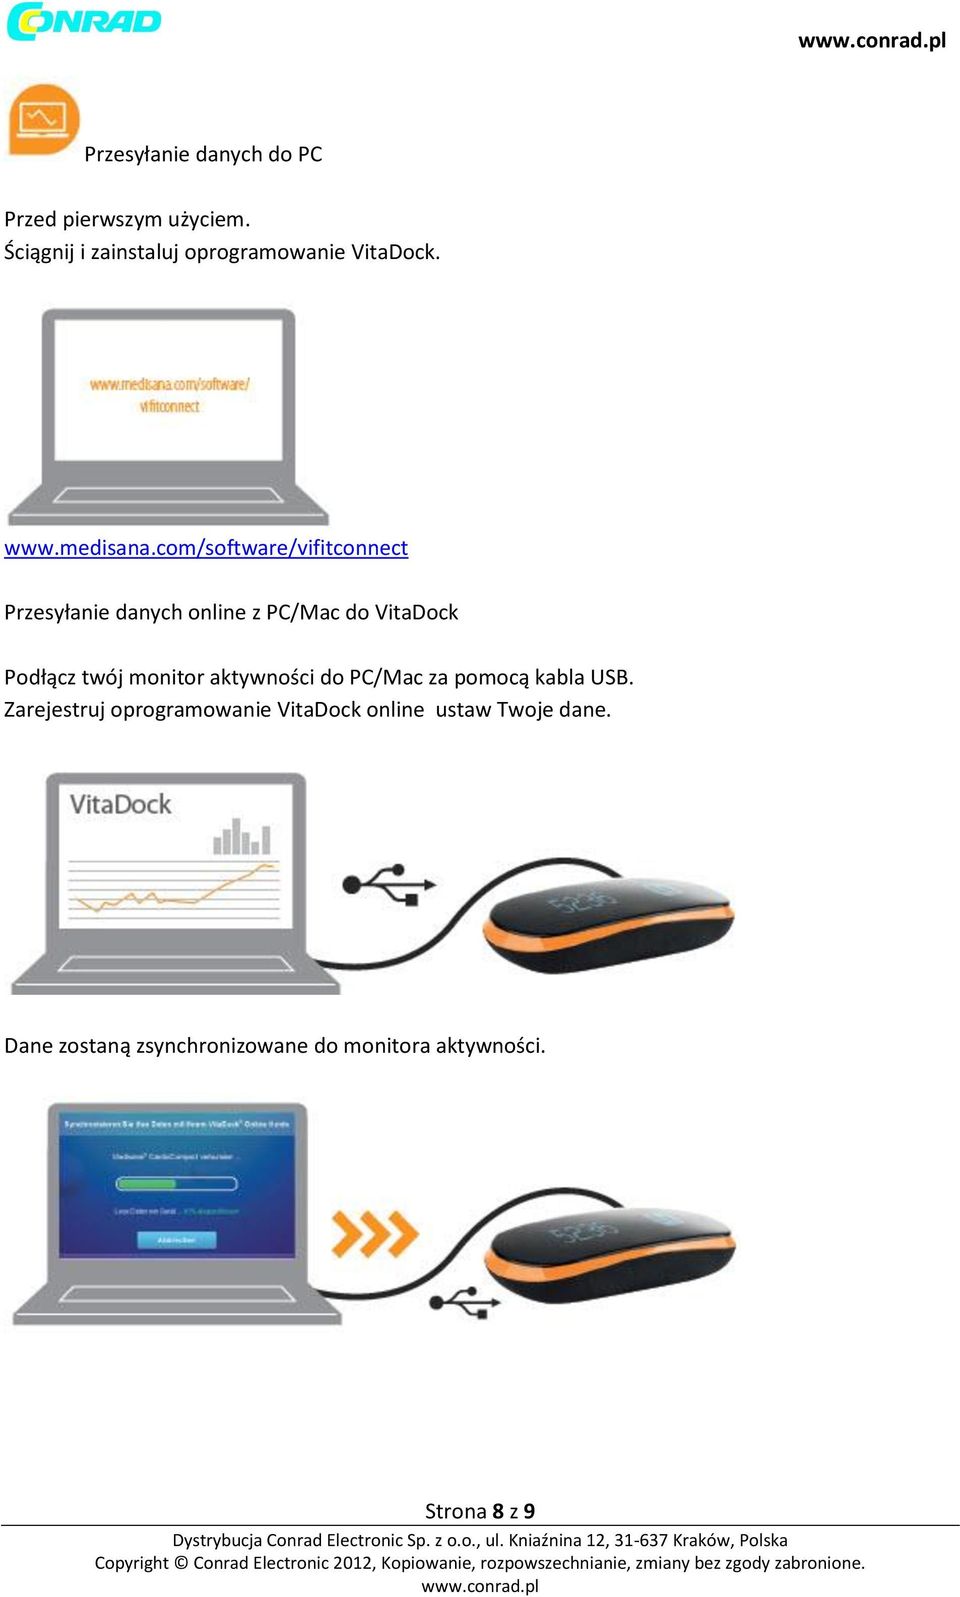 com/software/vifitconnect Przesyłanie danych online z PC/Mac do VitaDock Podłącz twój monitor